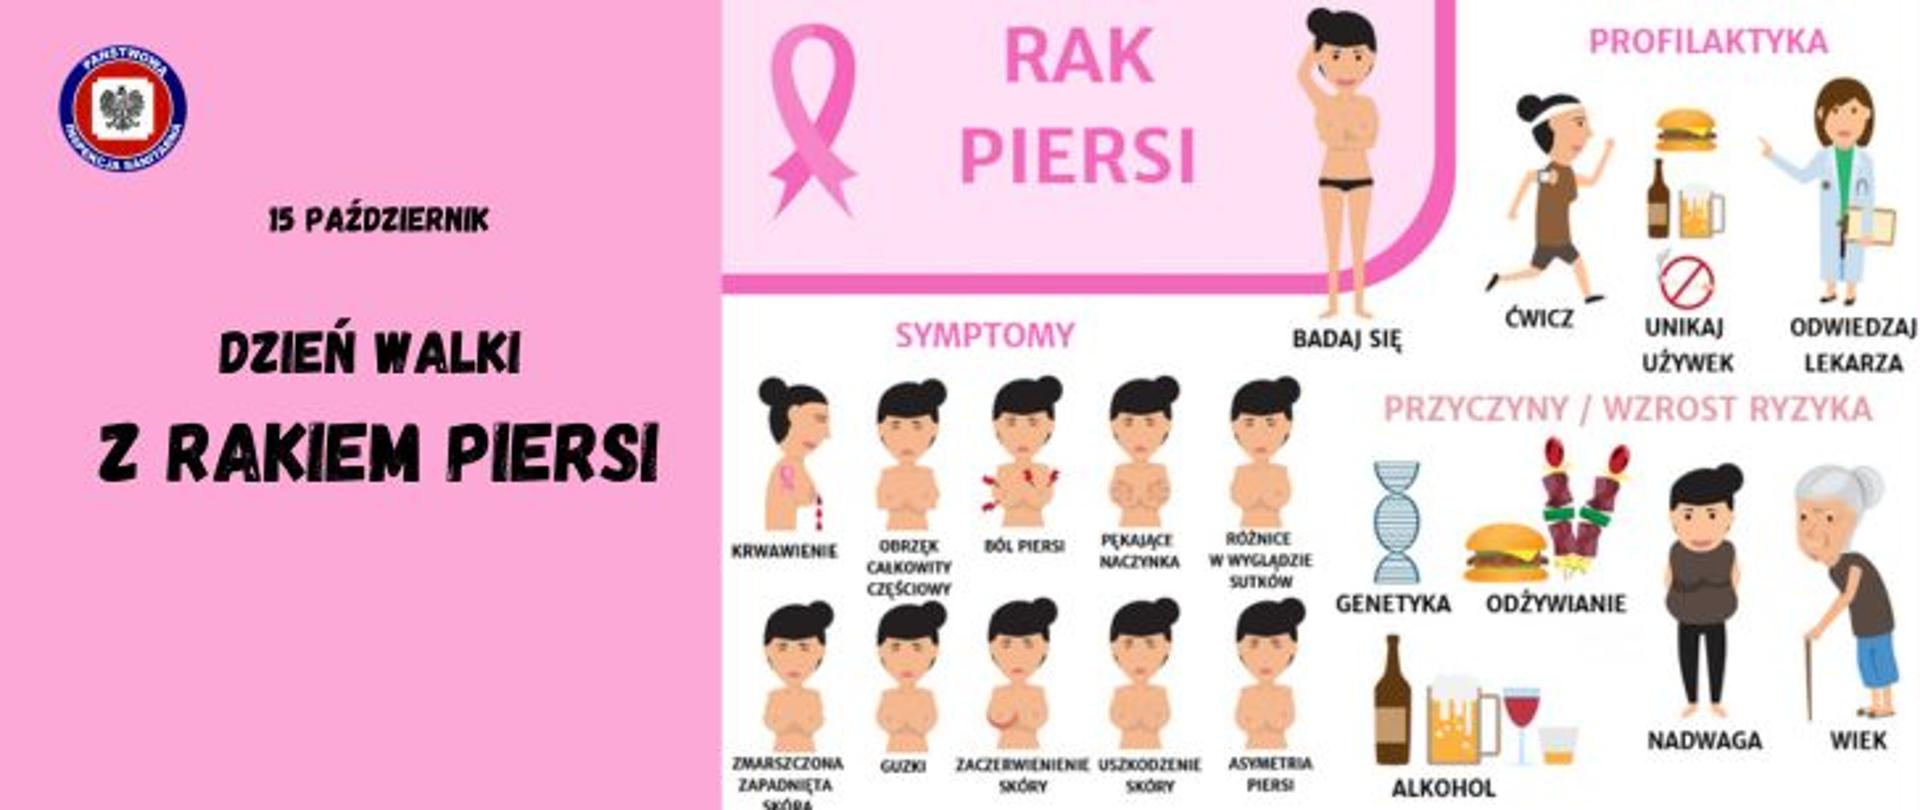 Na biało-różowej grafice po prawej stronie na różowym polu czarny napis 15 października dzień walki z rakiem piersi i w górnym lewym rogu logo Państwowej Inspekcji Sanitarnej. Z prawej strony od góry na różowym tle różowa wstążka i napis rak piersi, wykonująca samokontrolę piersi kobieta i wskazówki dotyczące profilaktyki w formie grafiki i treść ćwicz, unikaj używek, odwiedzaj lekarza, poniżej napis symptomy i w dwóch rzędach po pięć ta sama kobieta z różnymi symptomami w formie graficznej o opisem oraz w formie graficznej przyczyny/wzrost ryzyka jak genetyka odżywianie, nadwaga, wiek i alkohol.